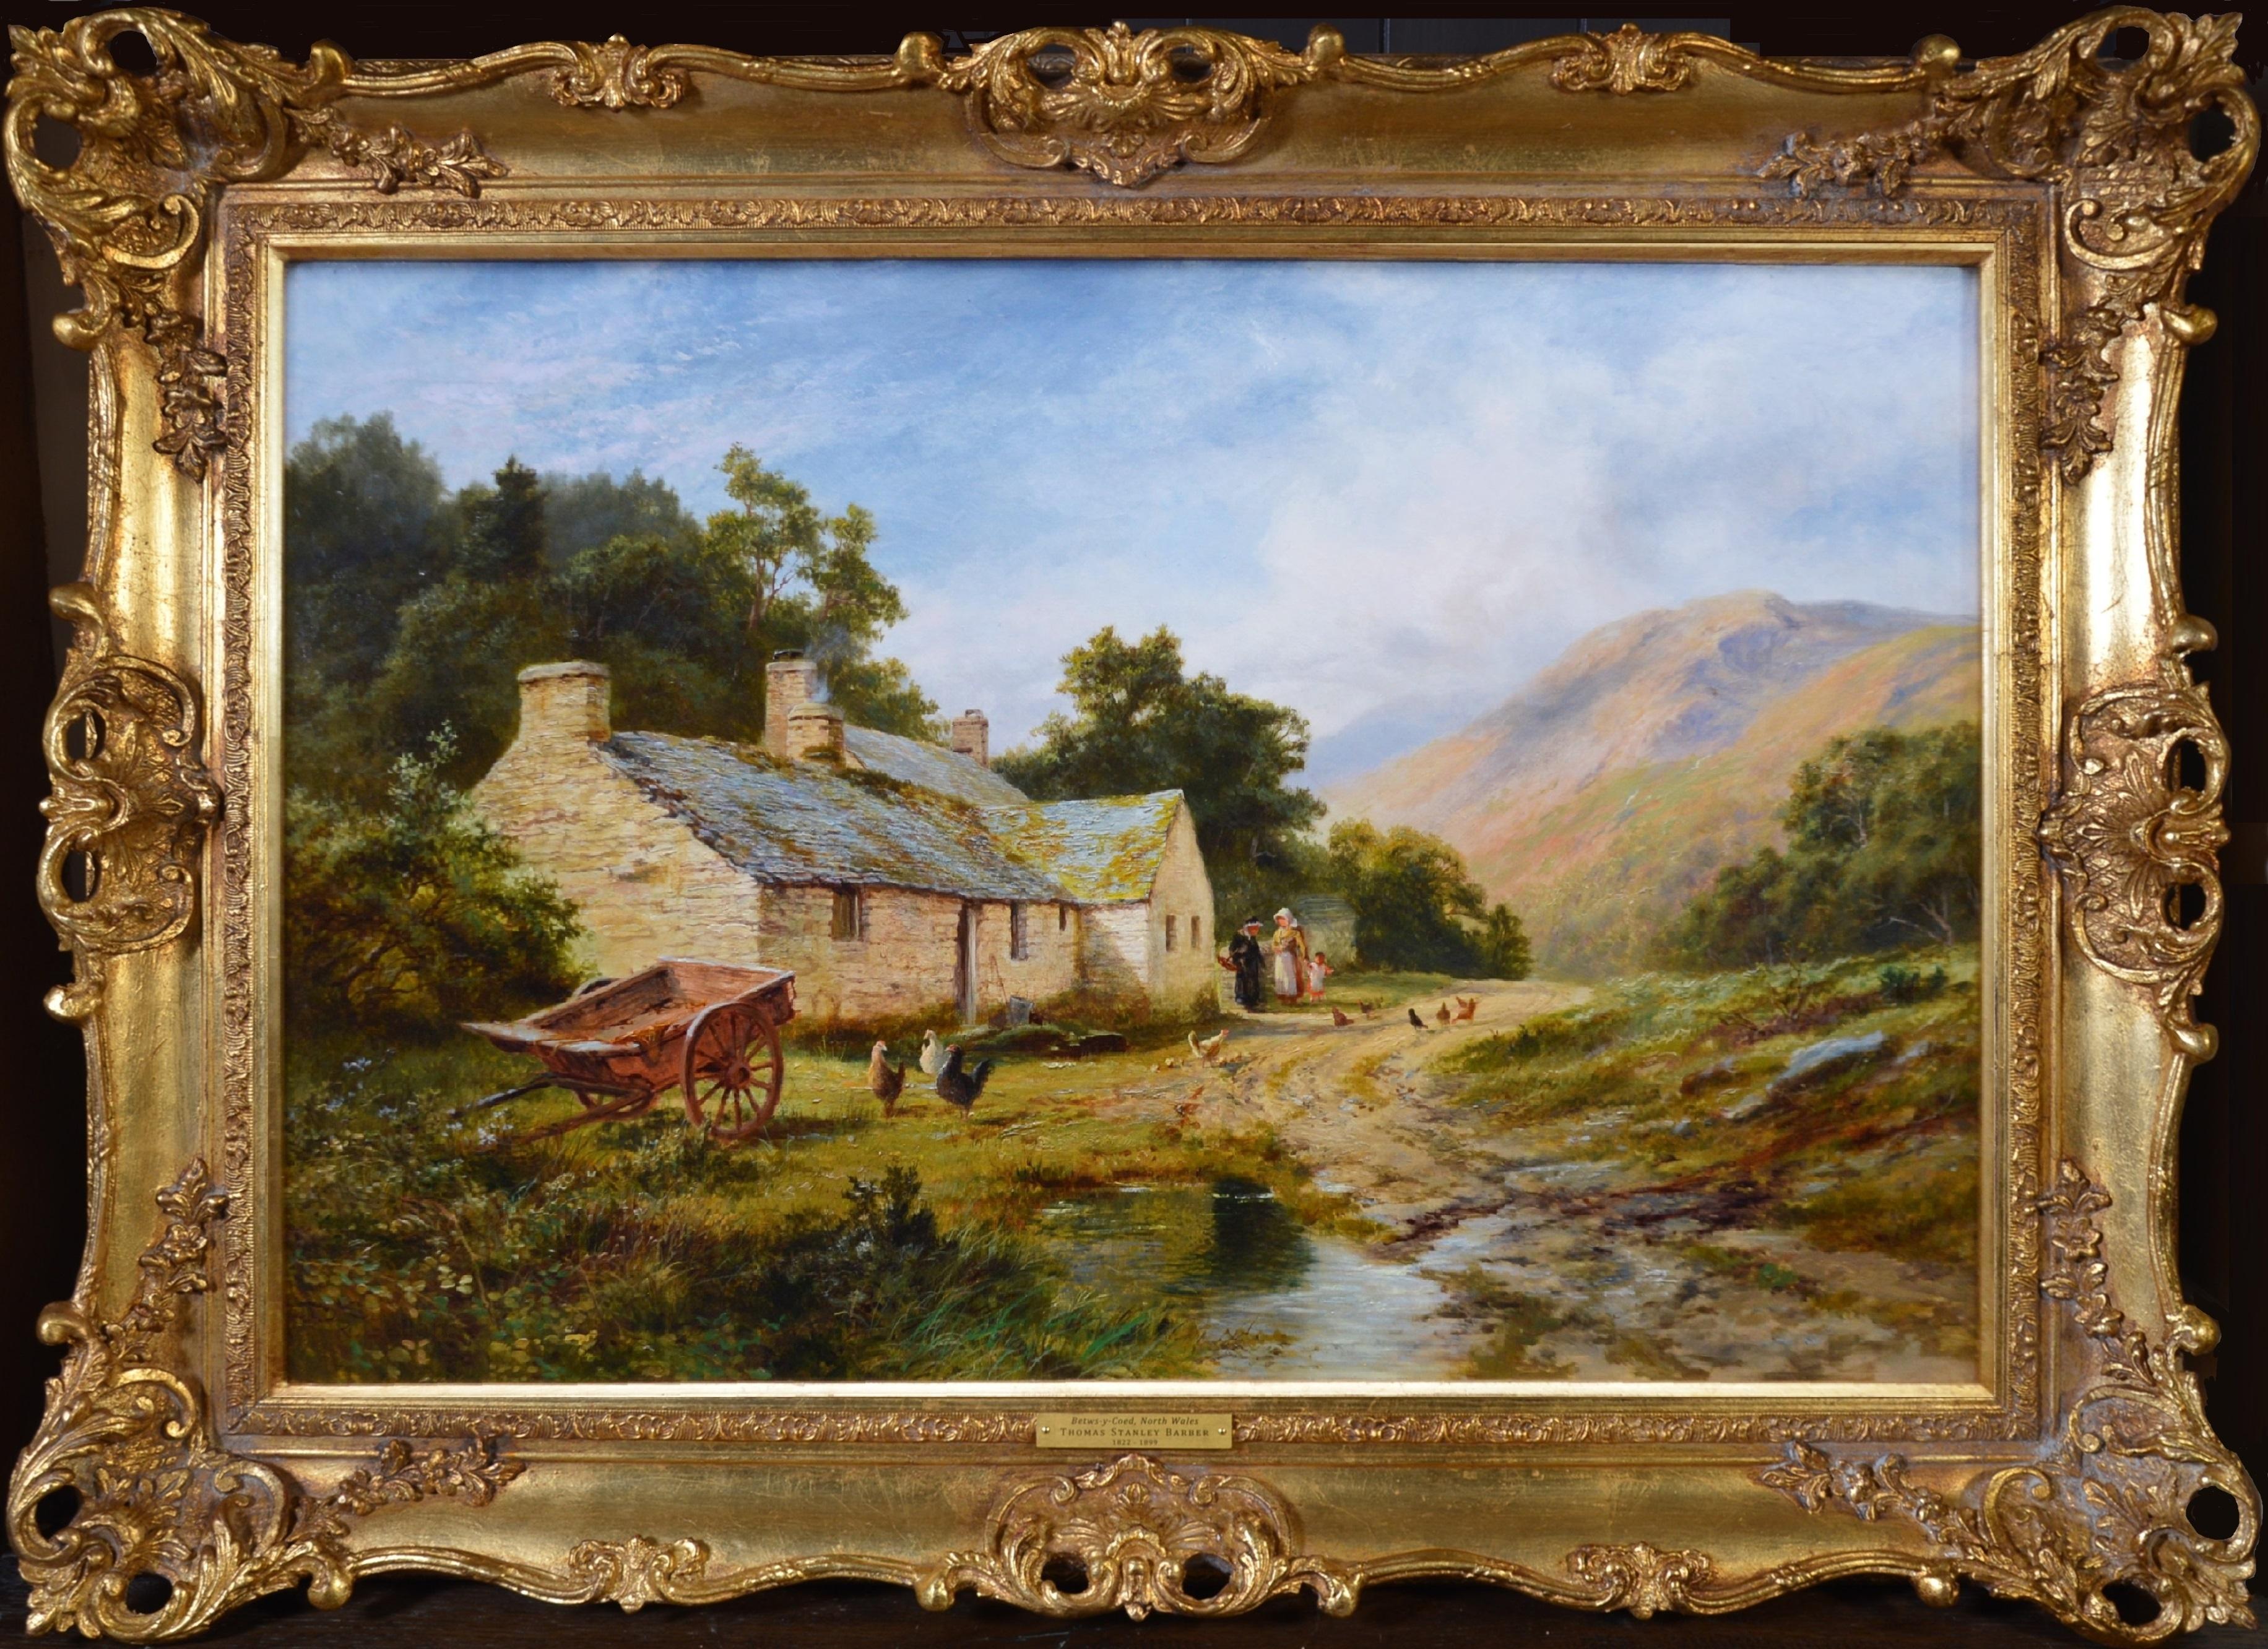 La vallée du Lledr - Paysage d'été du 19e siècle - Peinture à l'huile de Snowdonia, Pays de Galles - Painting de Robert Gallon